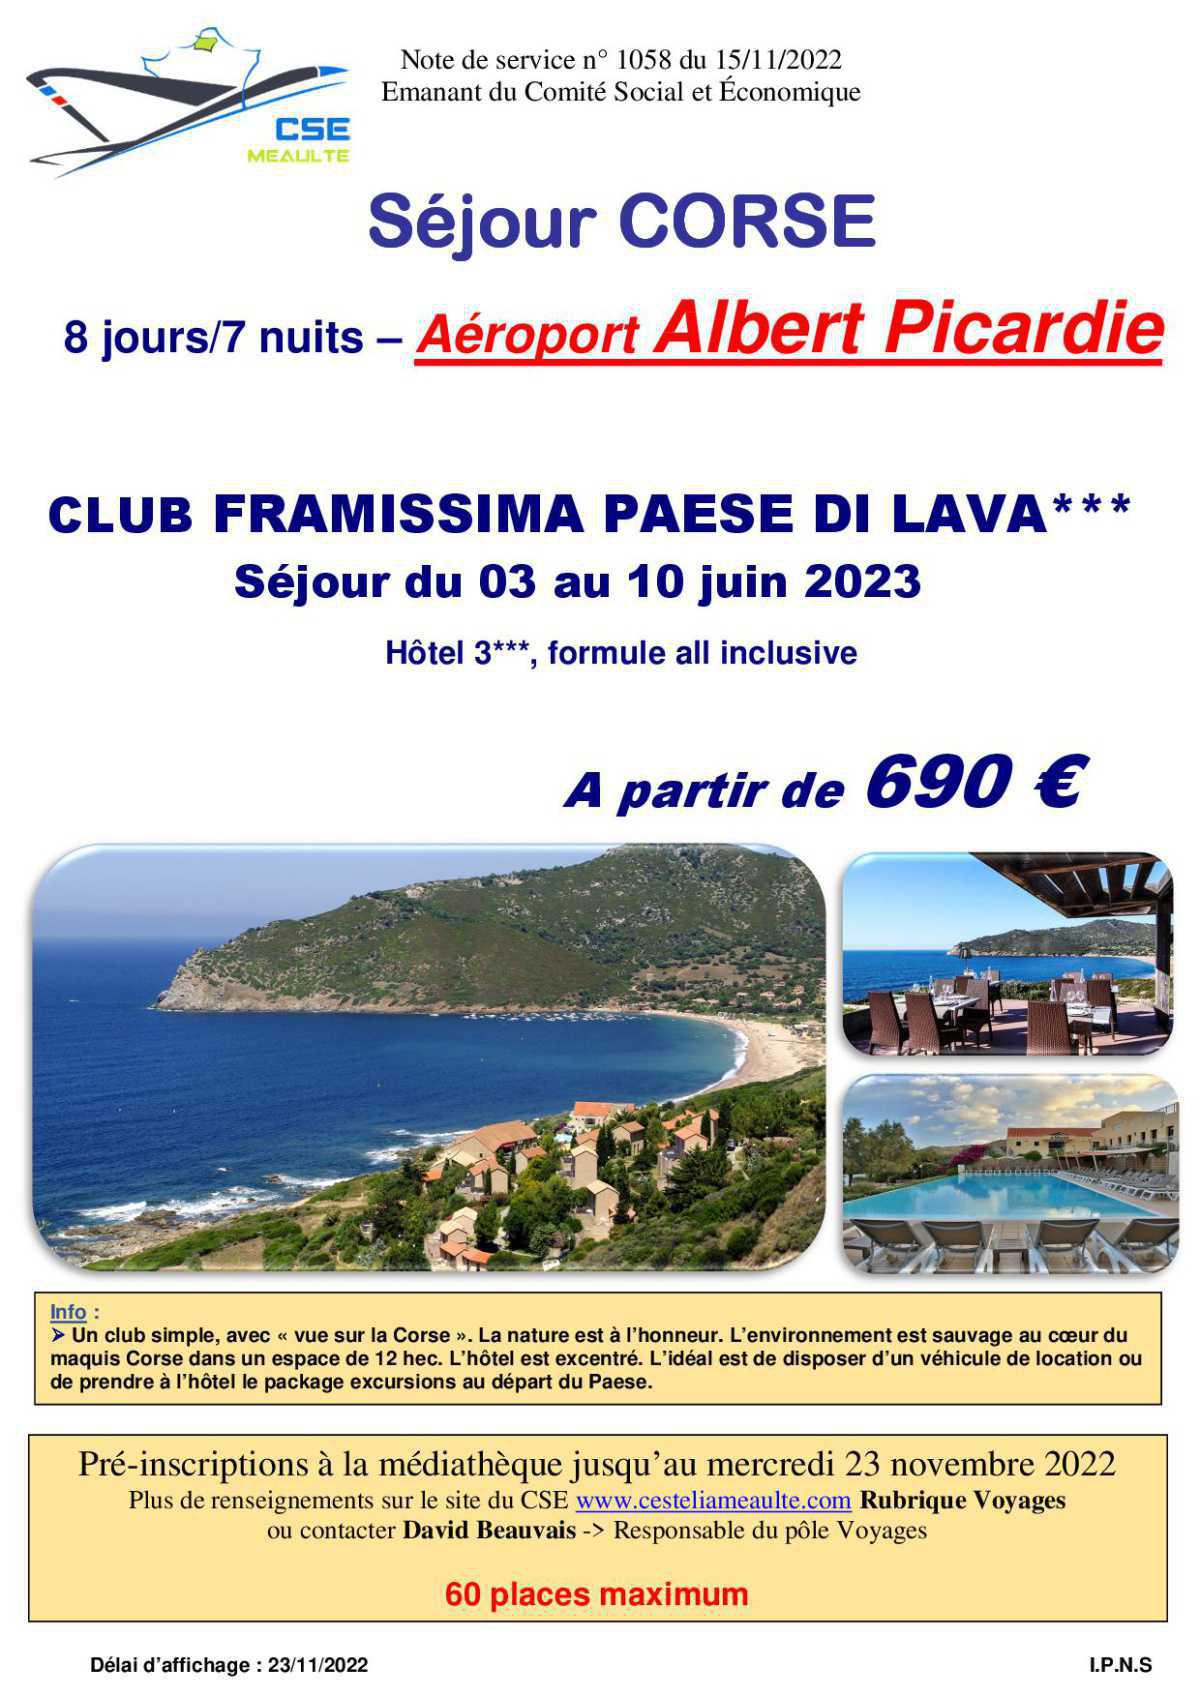 Corse du 3 au 10 juin 2023